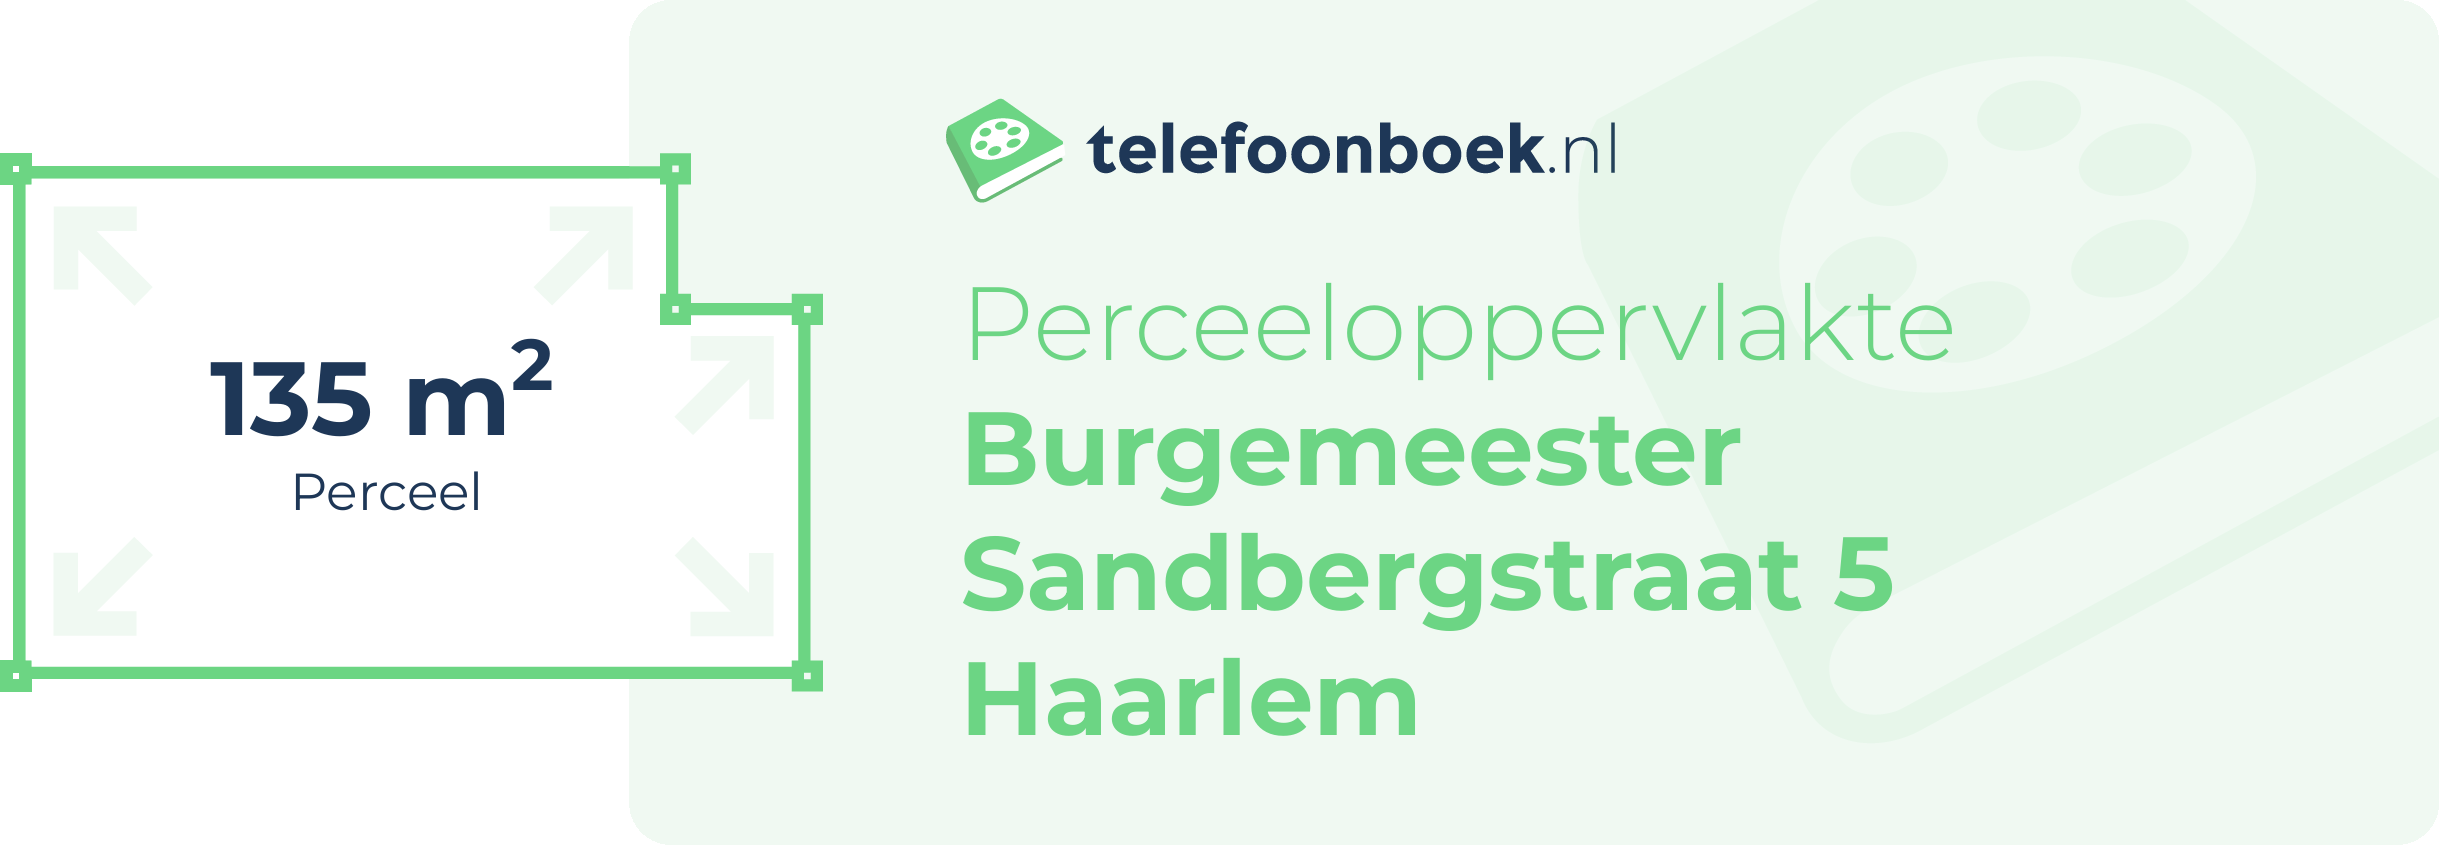 Perceeloppervlakte Burgemeester Sandbergstraat 5 Haarlem